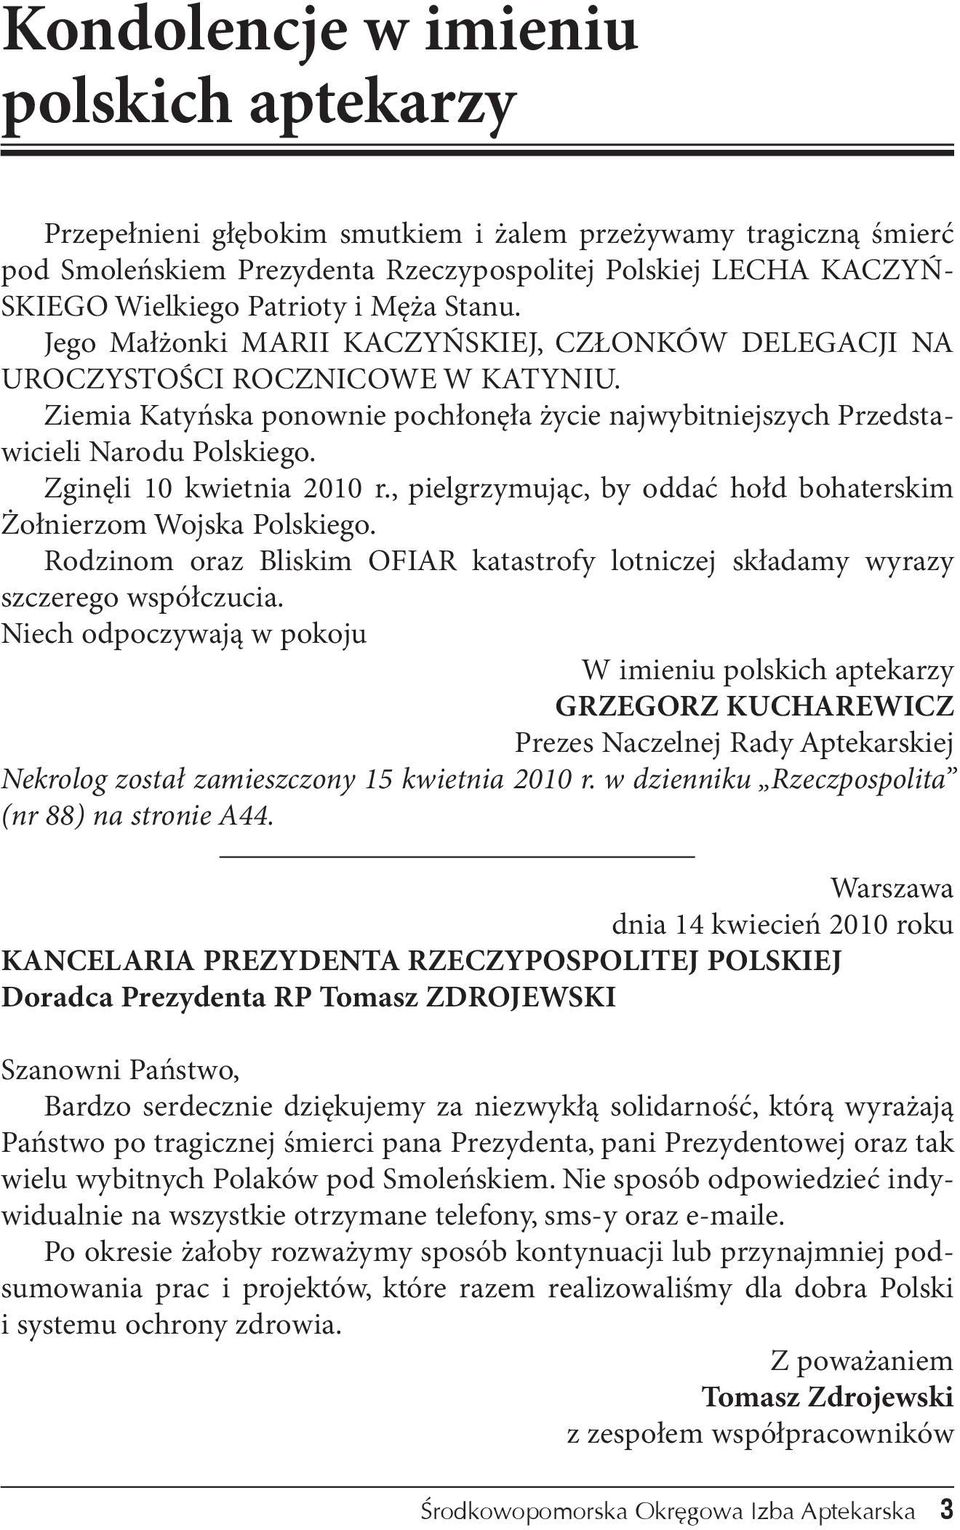 Ziemia Katyńska ponownie pochłonęła życie najwybitniejszych Przedstawicieli Narodu Polskiego. Zginęli 10 kwietnia 2010 r., pielgrzymując, by oddać hołd bohaterskim Żołnierzom Wojska Polskiego.